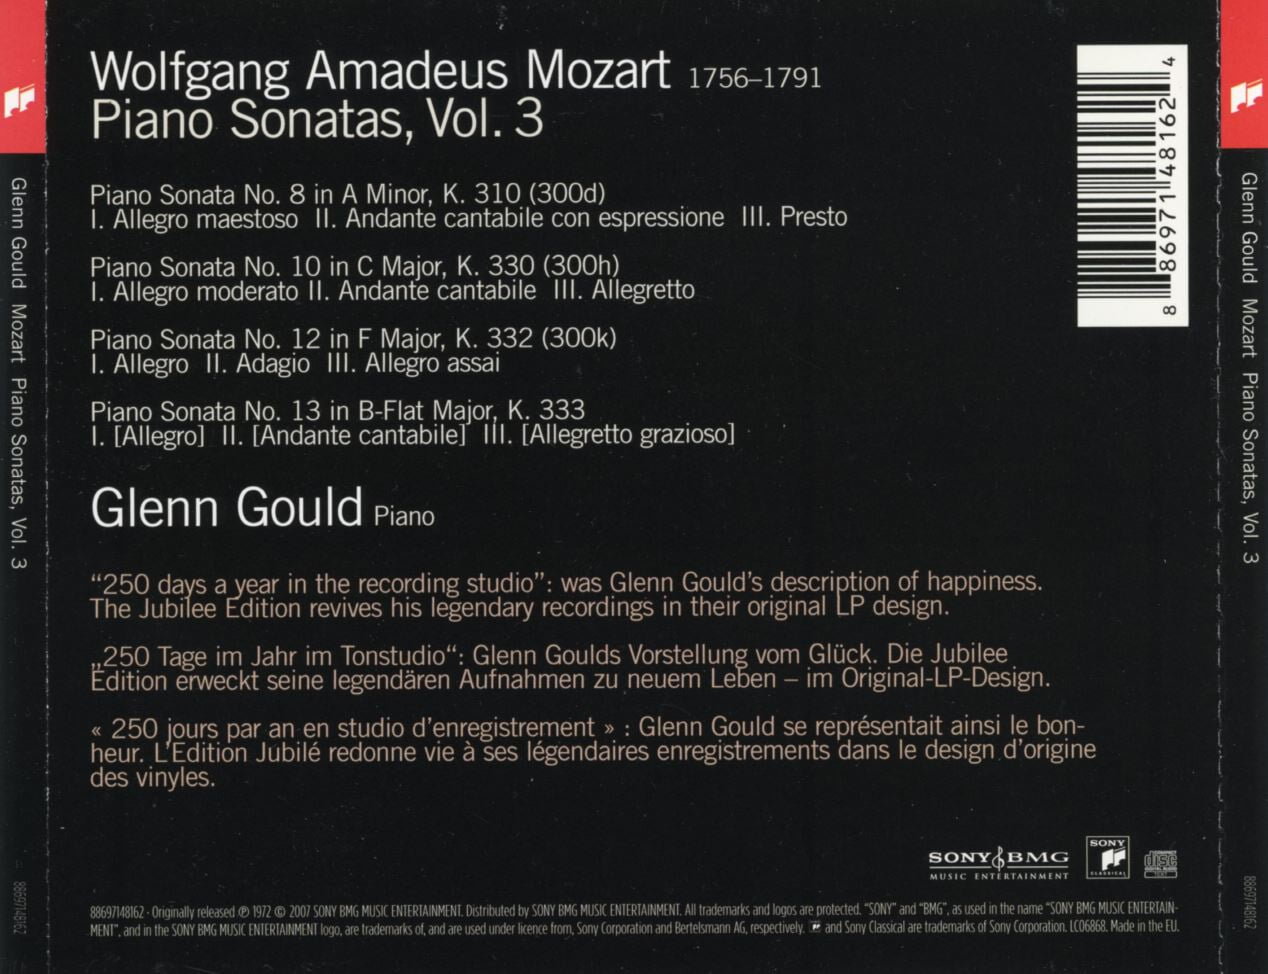 글렌 굴드 - Glenn Gould - Mozart Piano Sonatas, Vol.3 (Sonatas Nos. 8, 10, 12 & 13) [E.U발매]